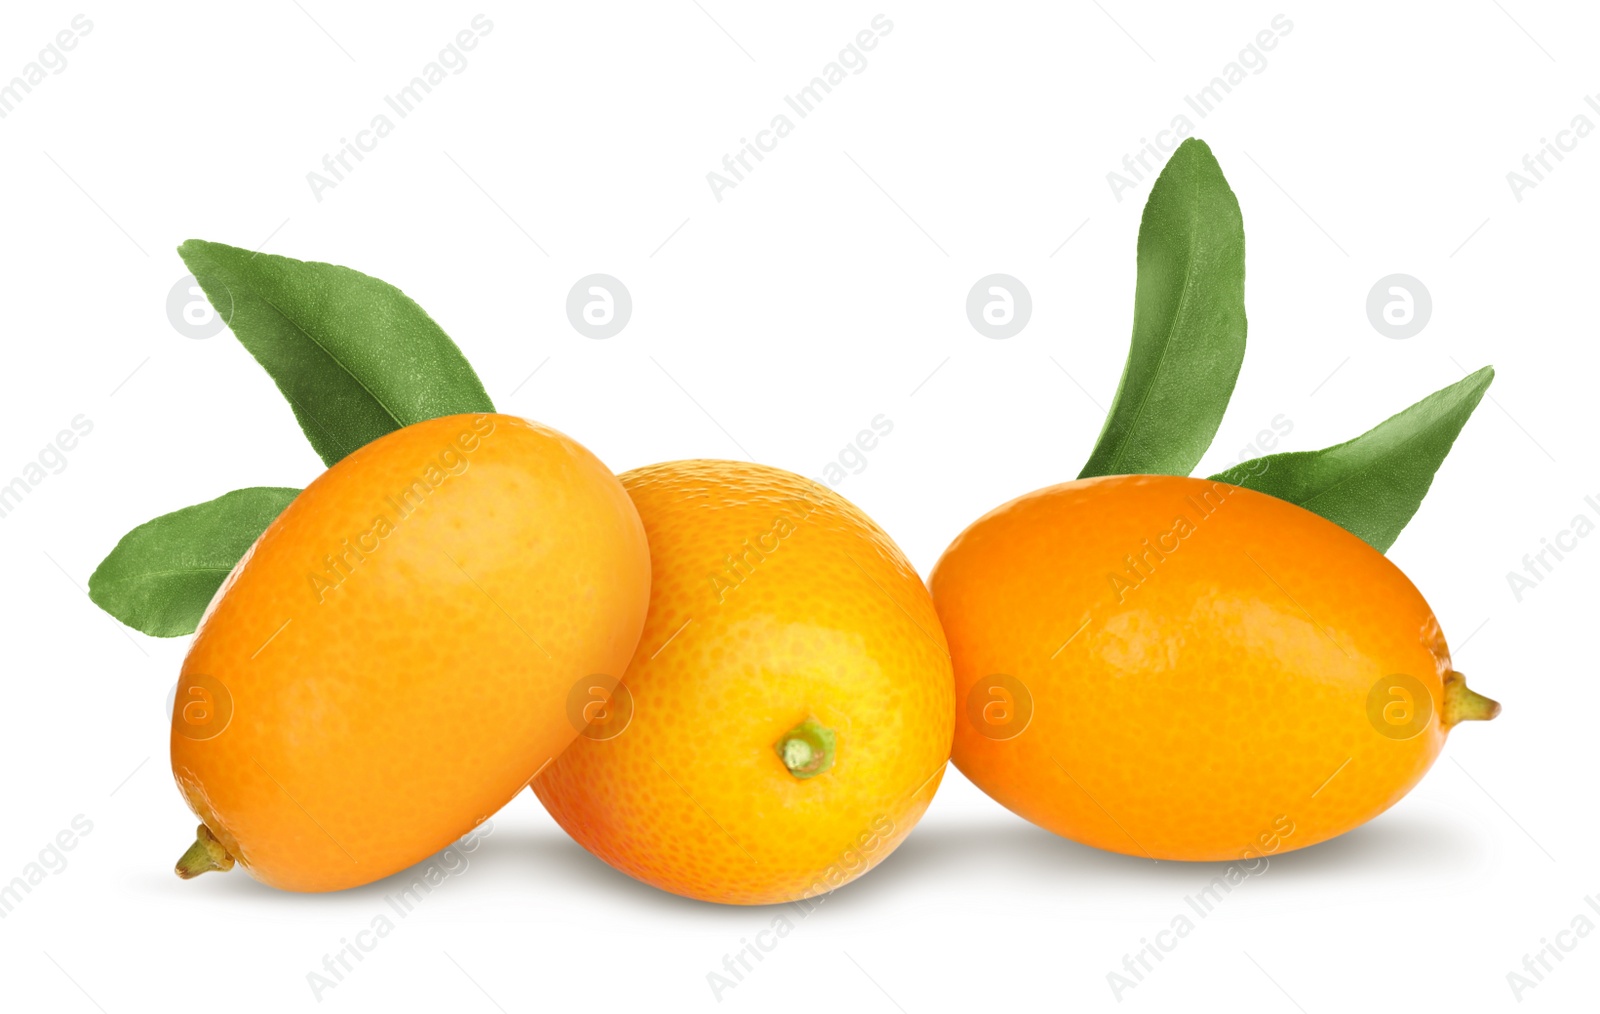 Image of Fresh ripe kumquat fruits on white background